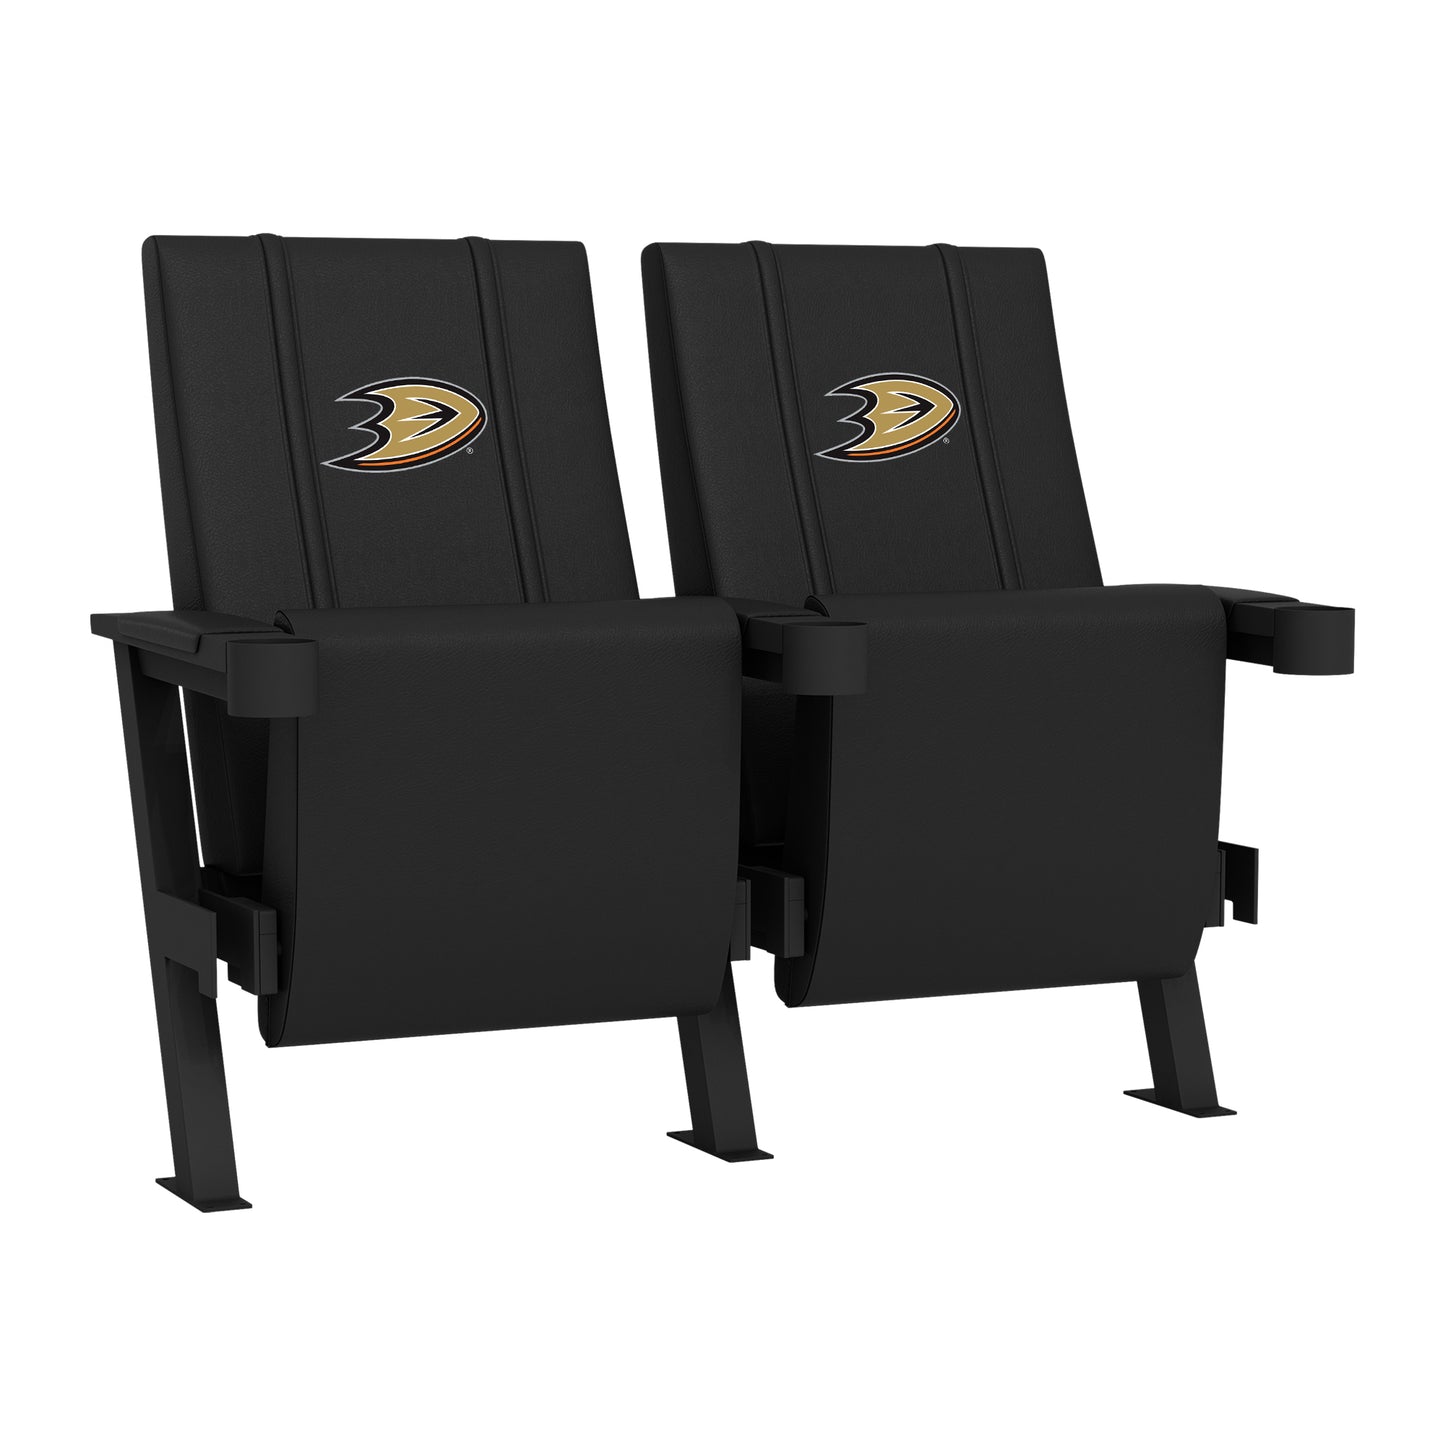 SuiteMax 3.5 VIP Seats with Anaheim Ducks Logo